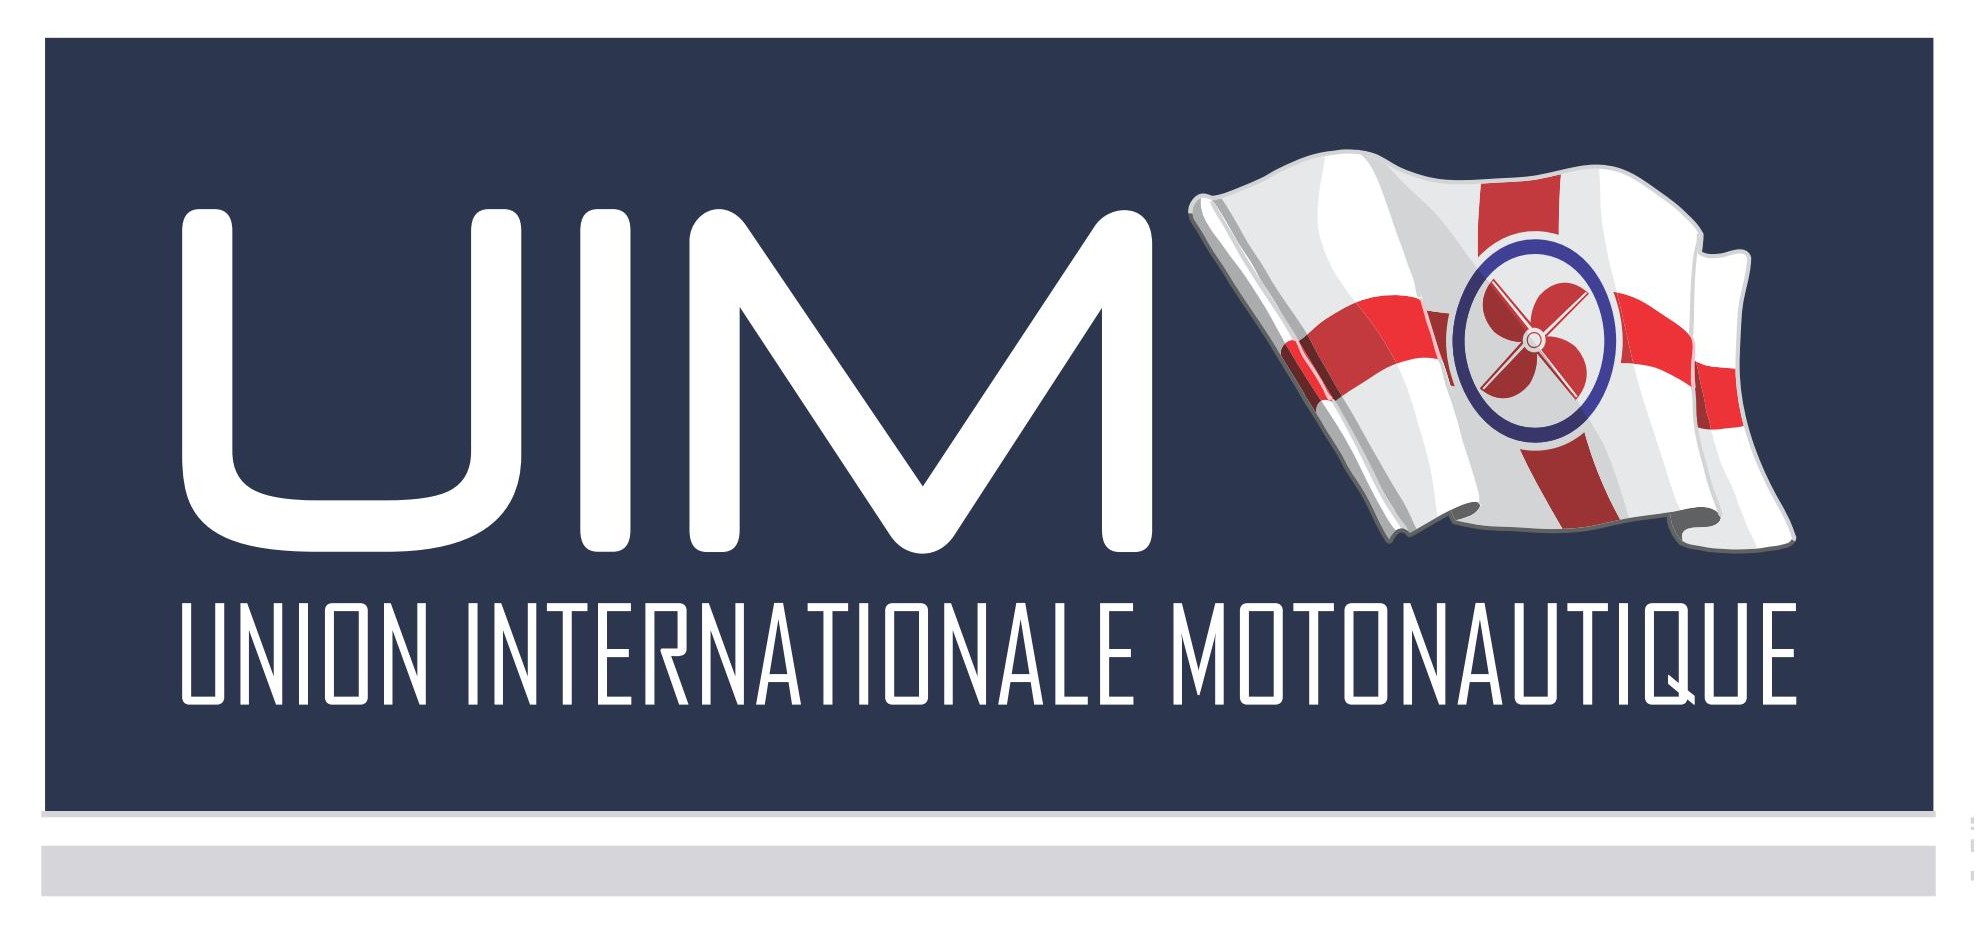 Union Internationale Motonautique